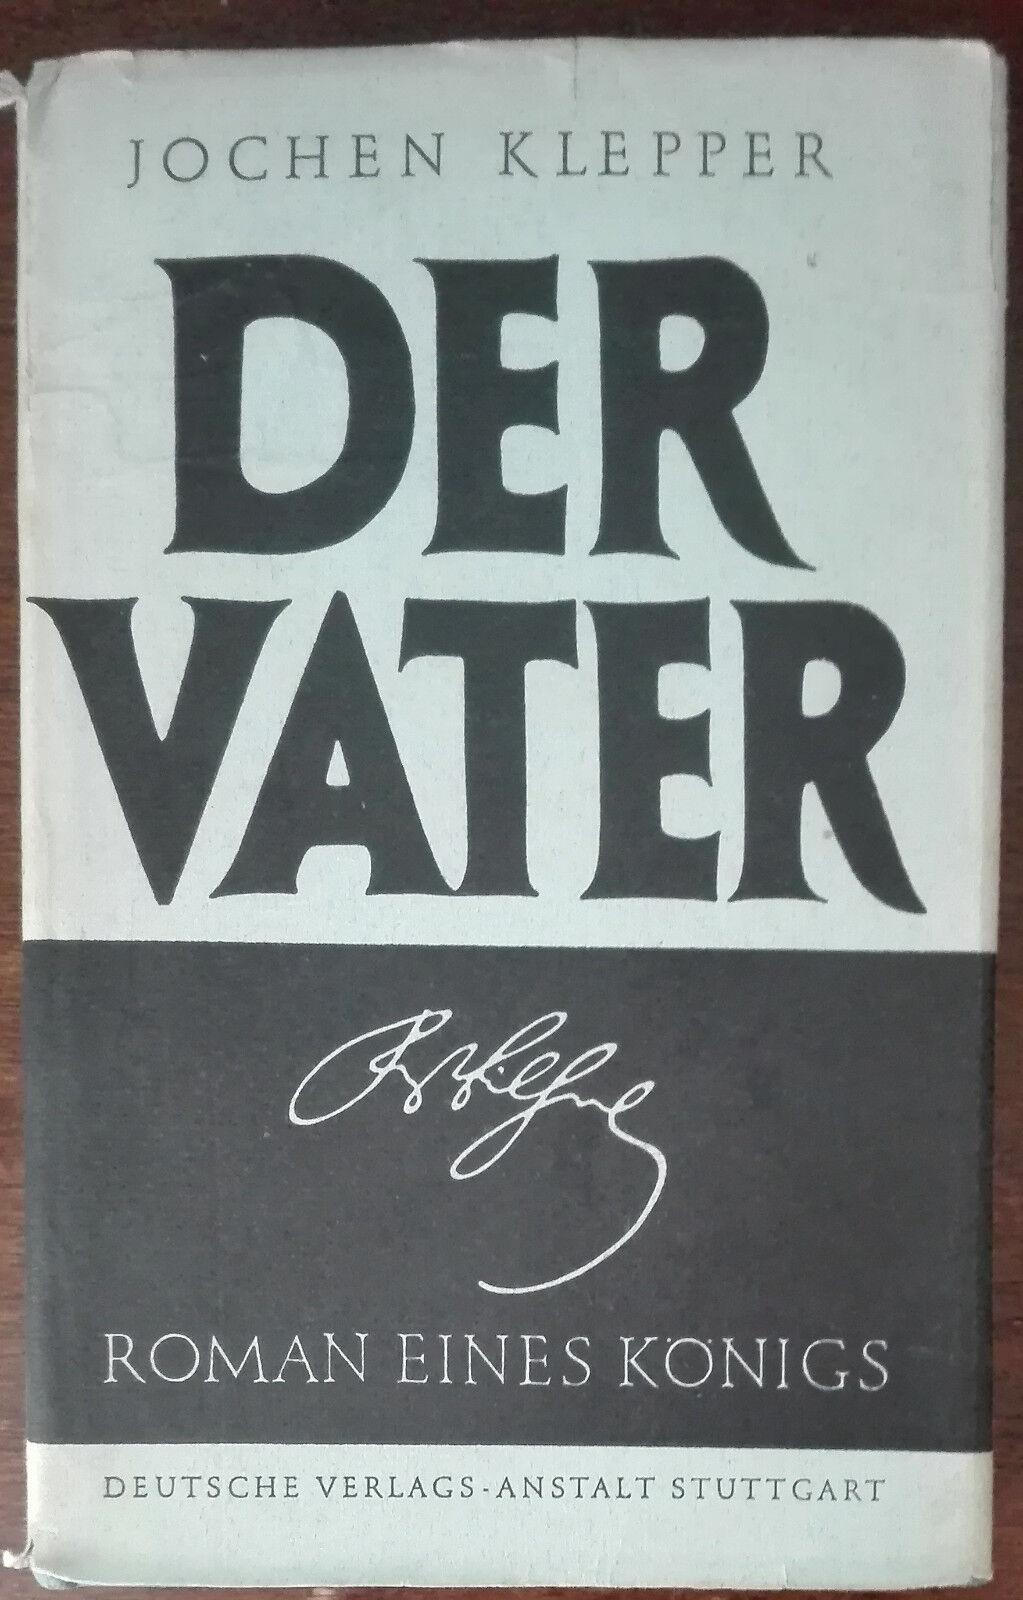 Der Vater - Jochen Klepper - Deutsche verlags anstalt, 1966 - A